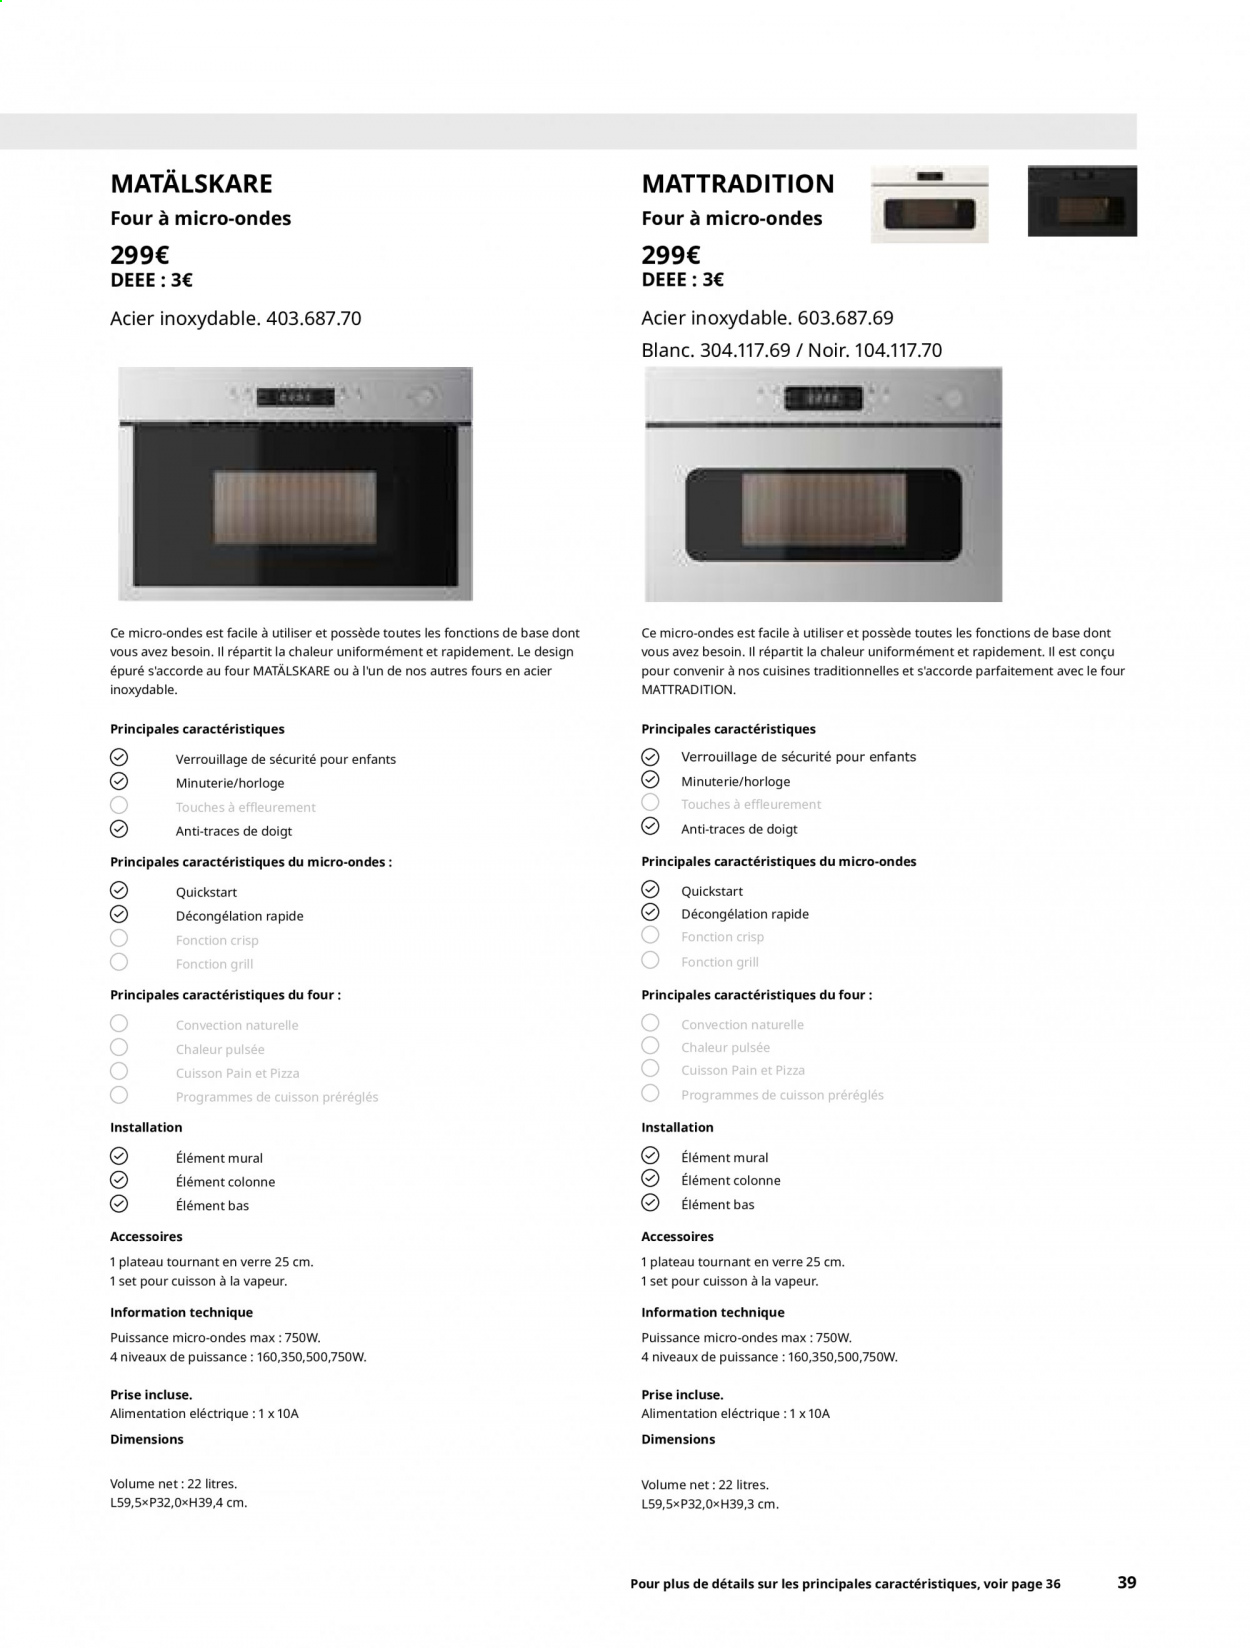 Catalogue IKEA. Page 39.